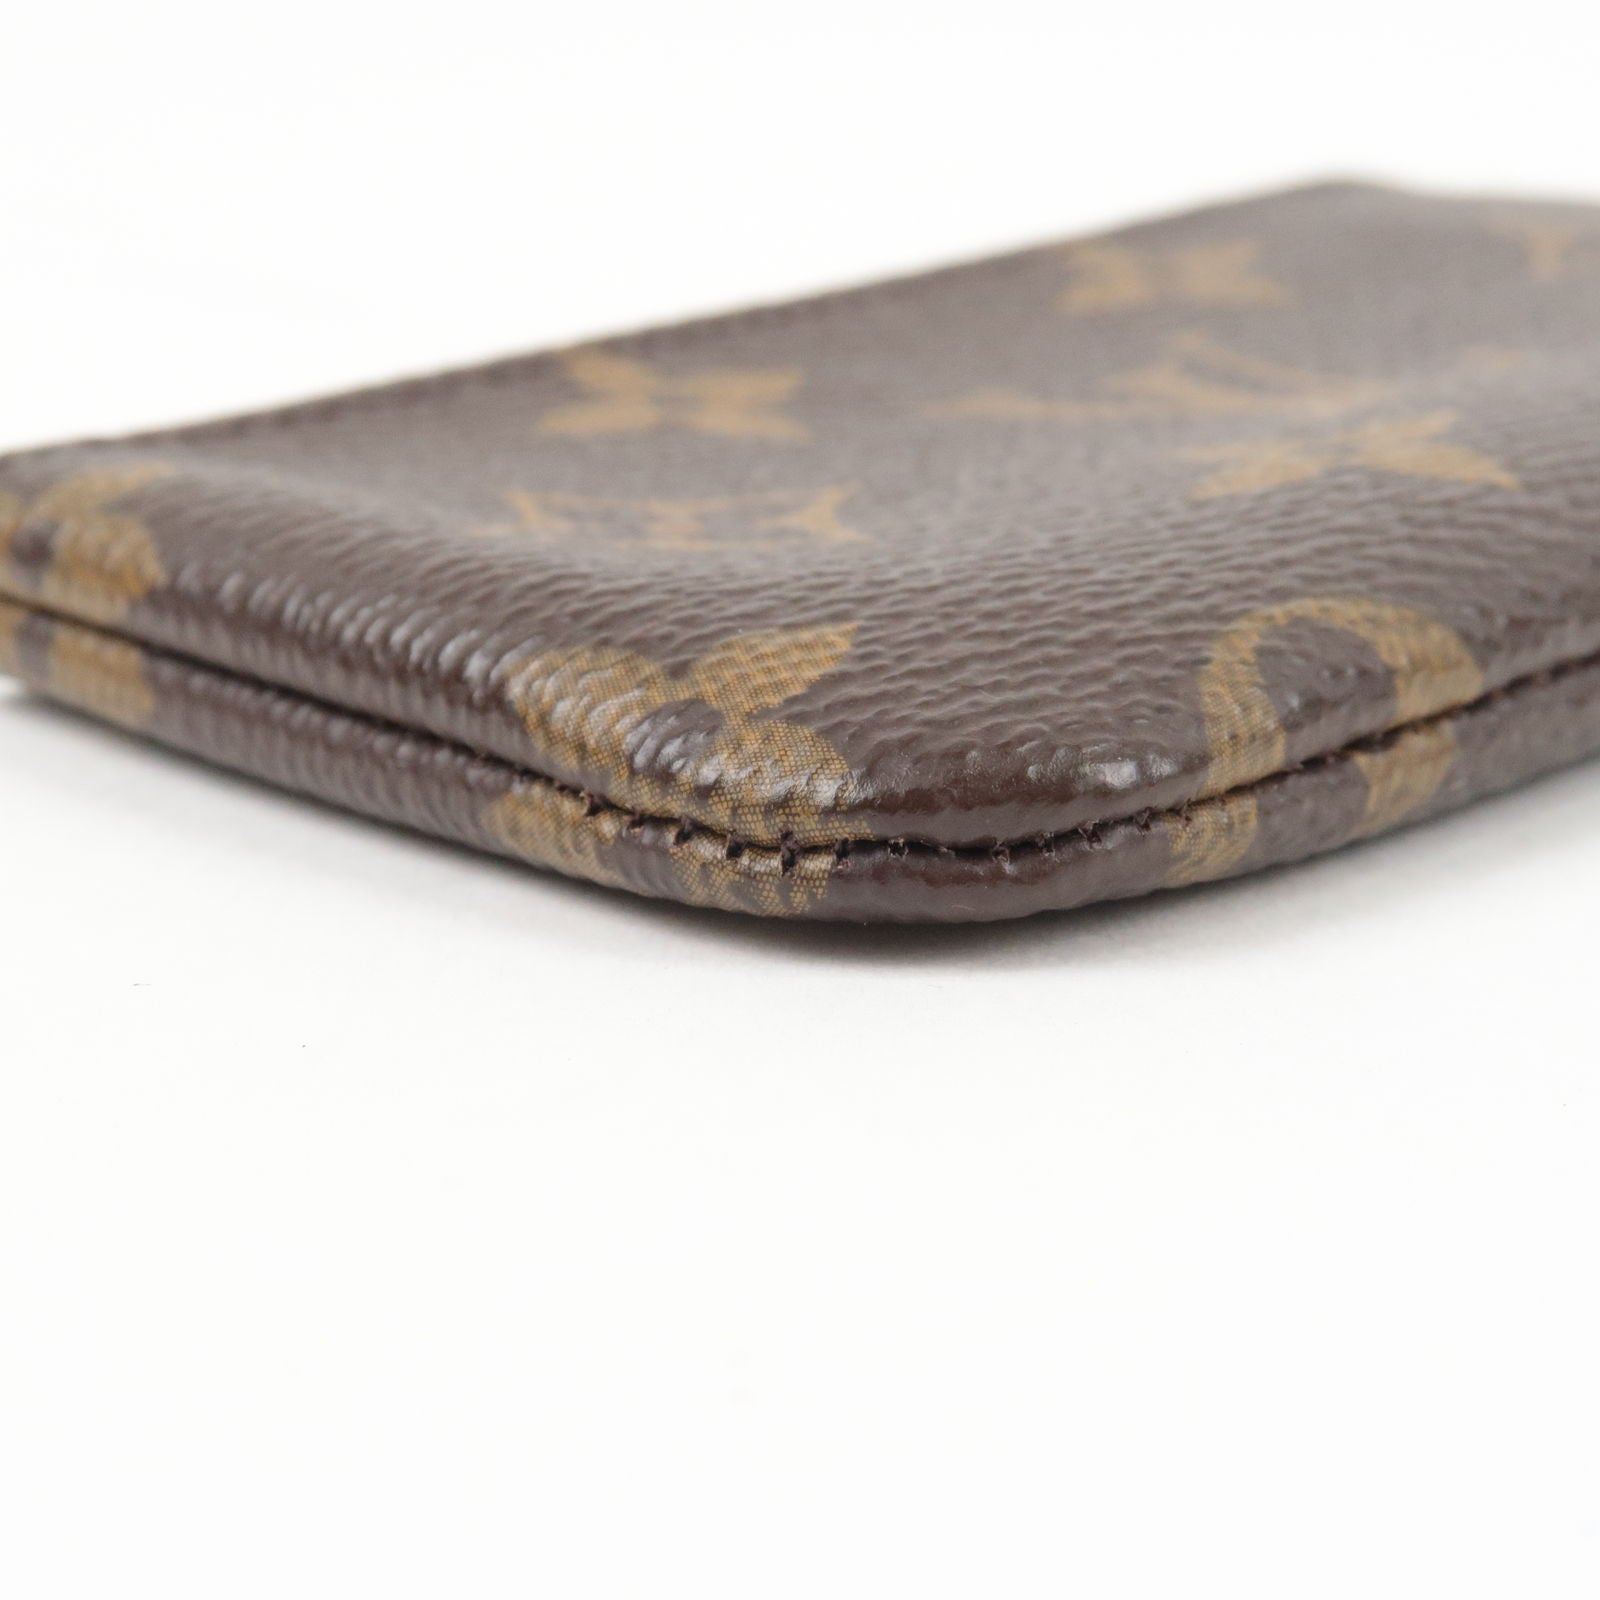 Authentic Louis Vuitton Monogram Pochette Cles Coin Purse Case M62650 Box  1378F